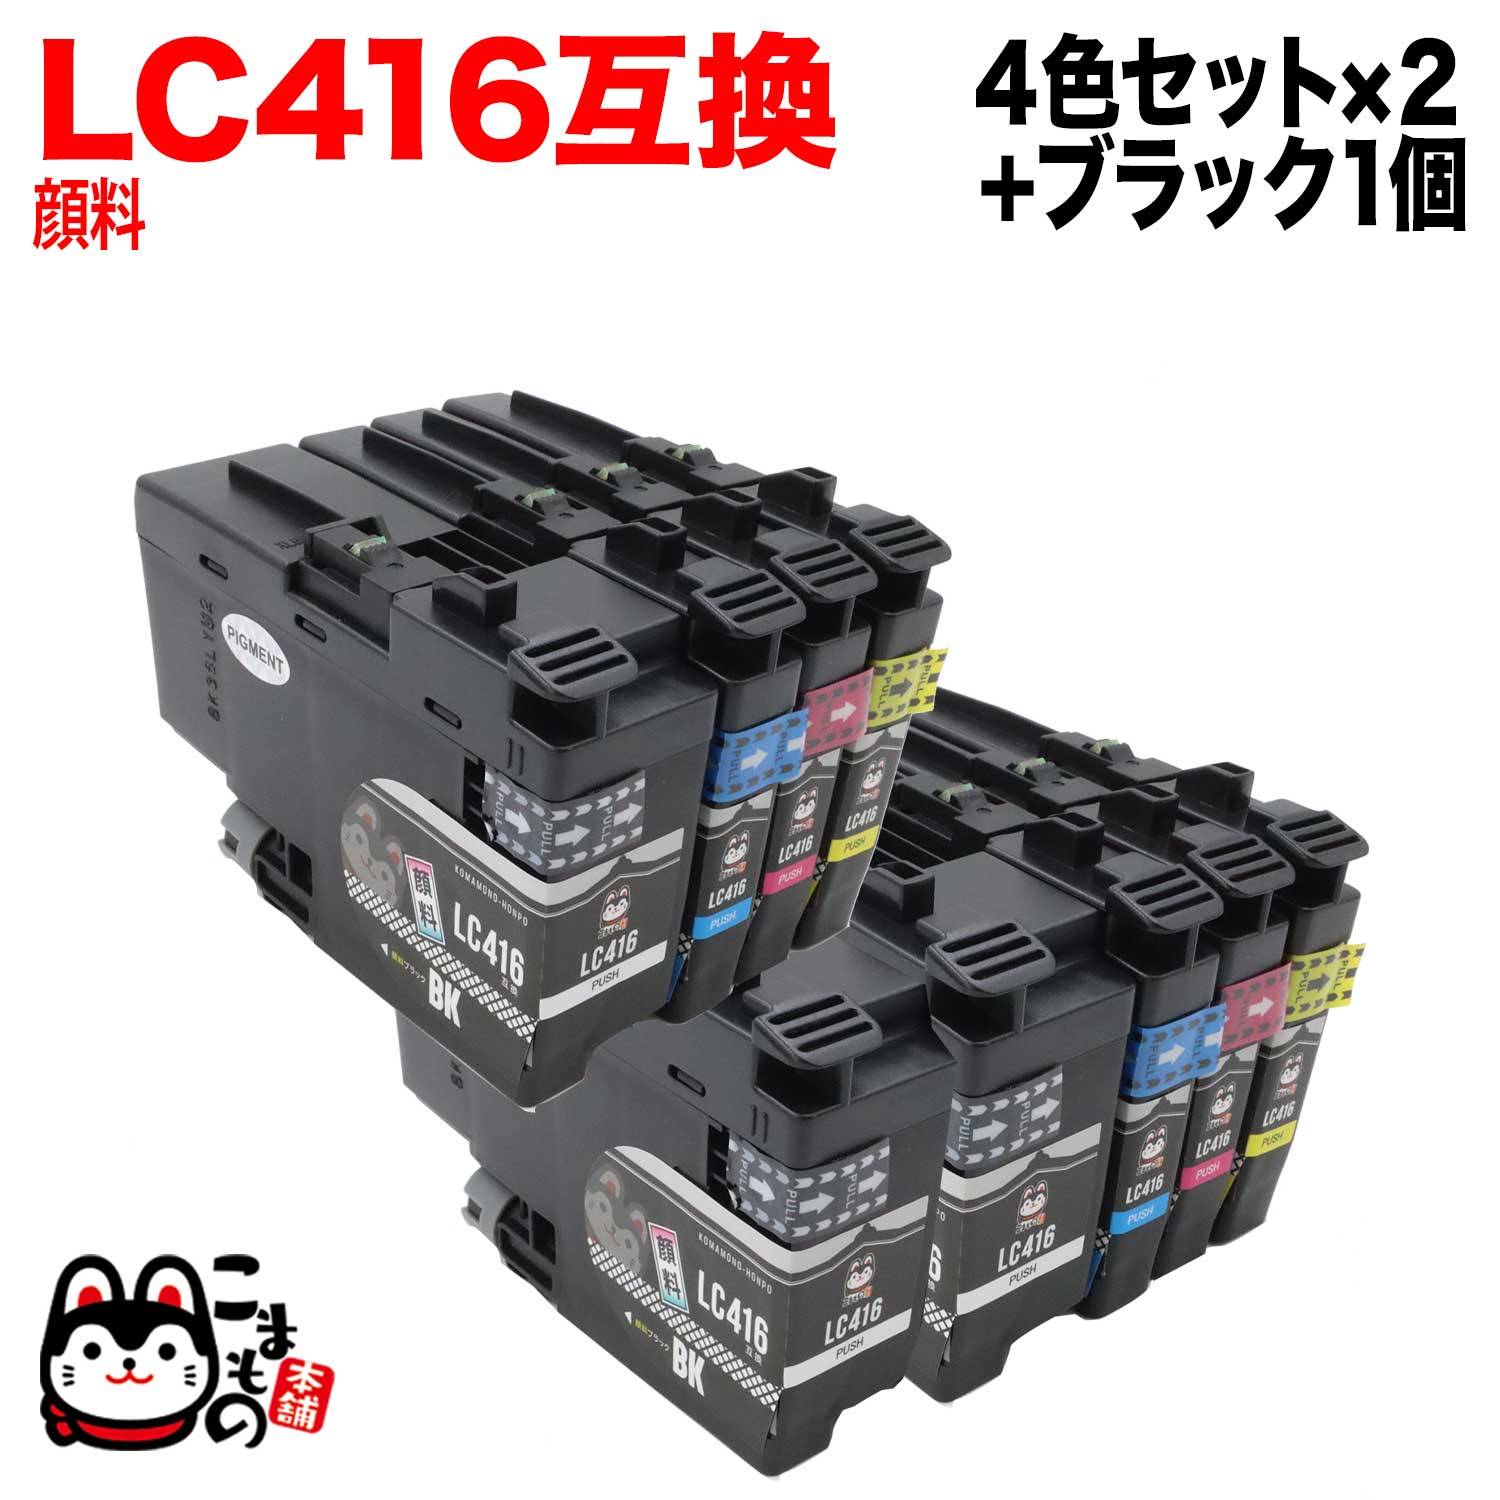 LC416-4PK ブラザー用 LC416 互換インクカートリッジ 全色顔料 4色×2